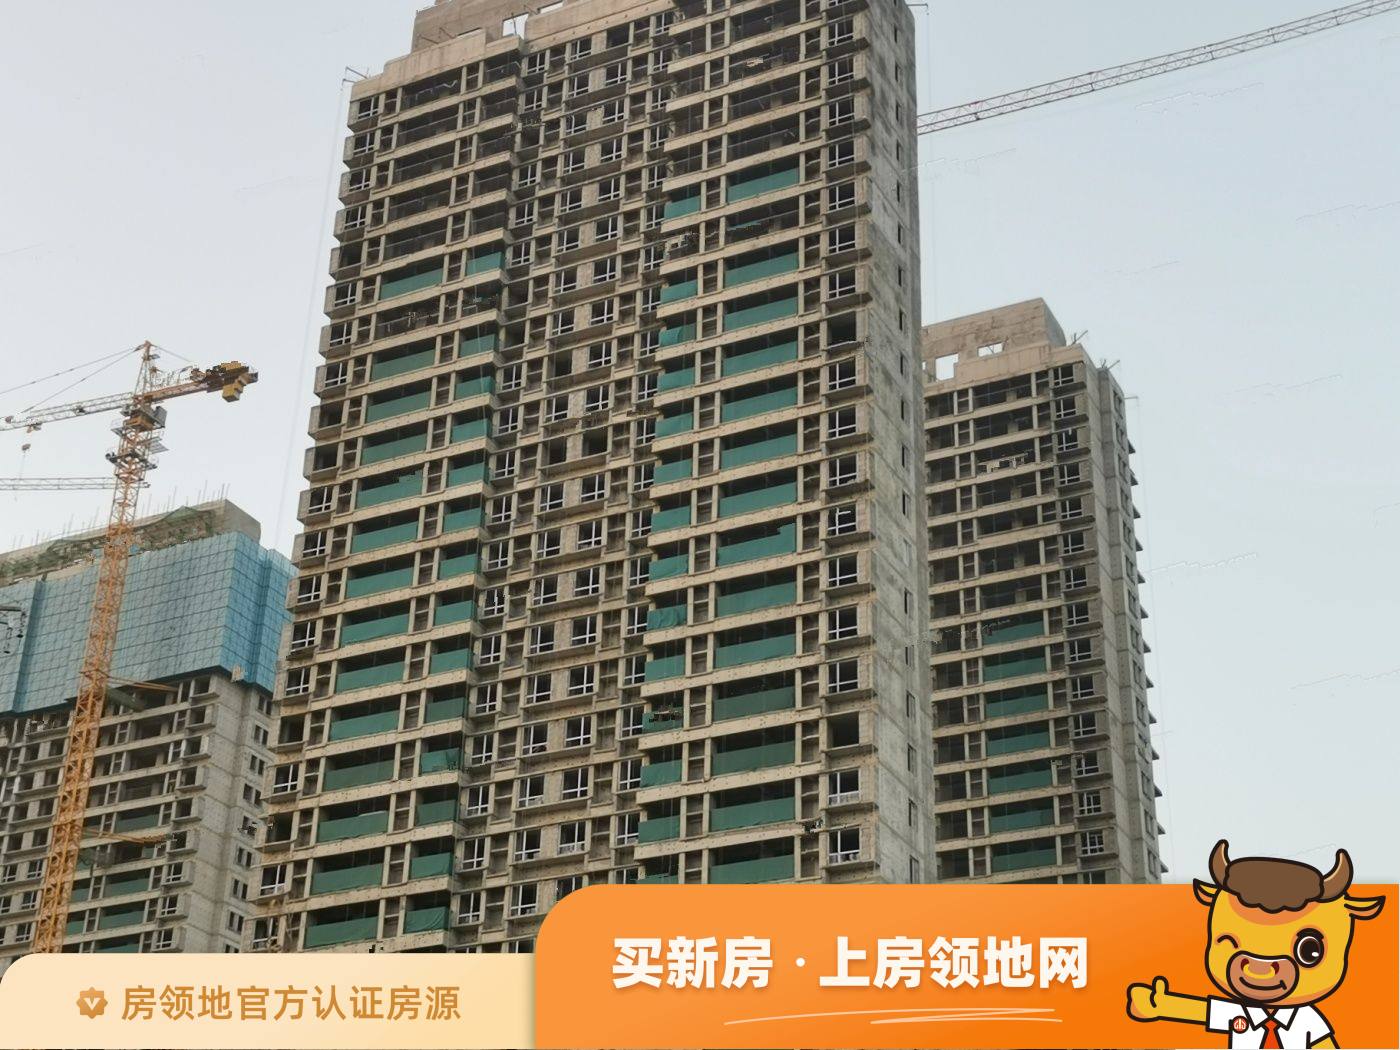 郑州融侨雅筑均价为21000元每平米